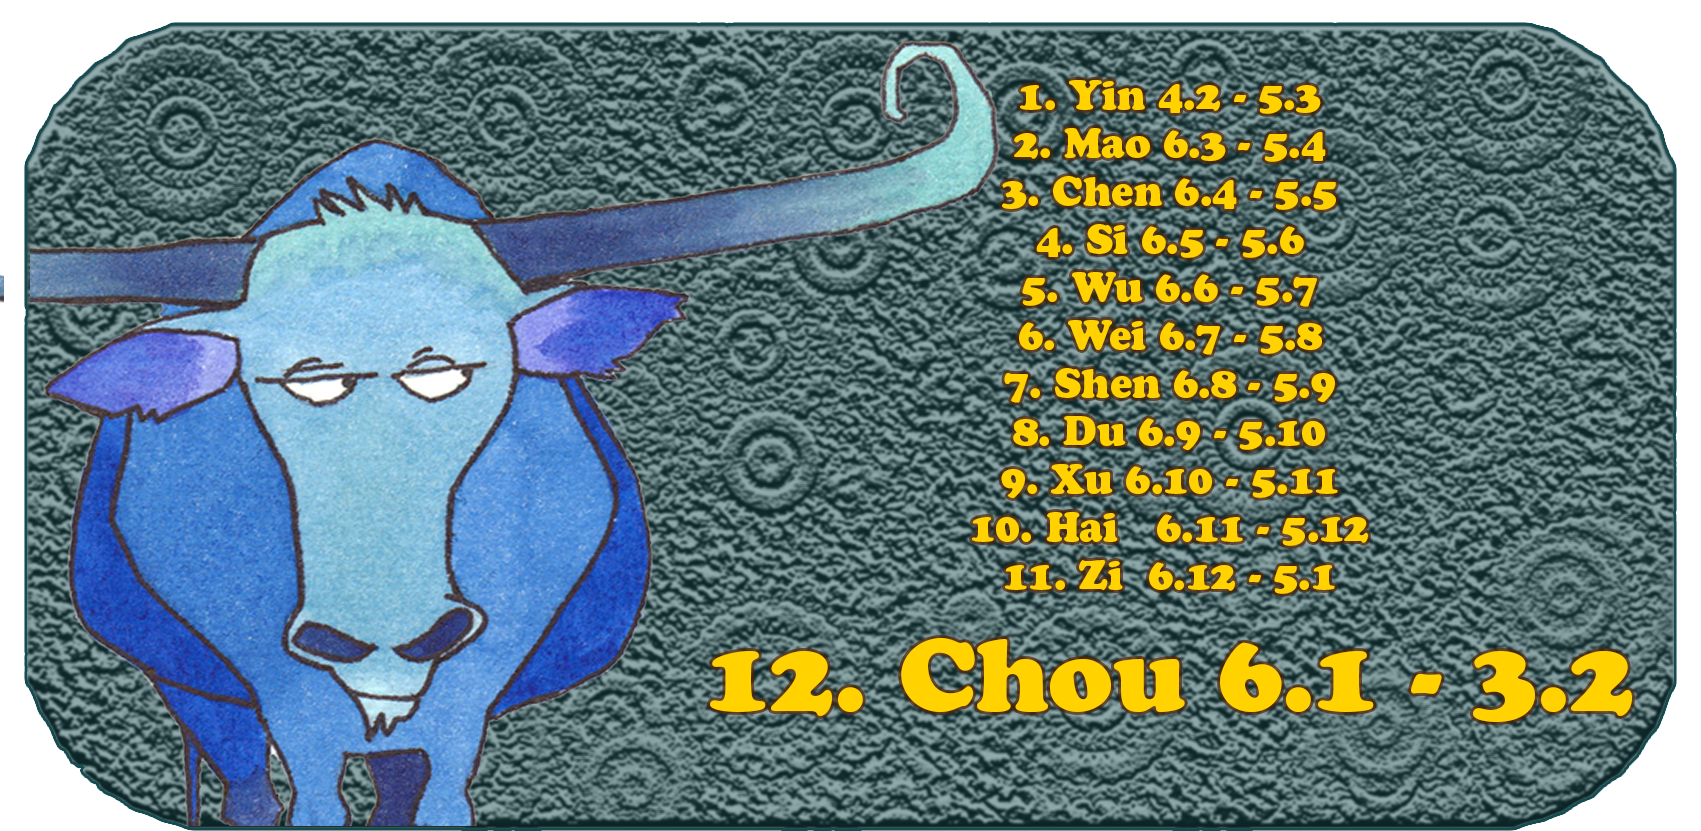 Kiinan horoskooppi | Kaksitoista kiinalaista eläintä | Härkä, tammikuu, 12. kuukausi, Chou